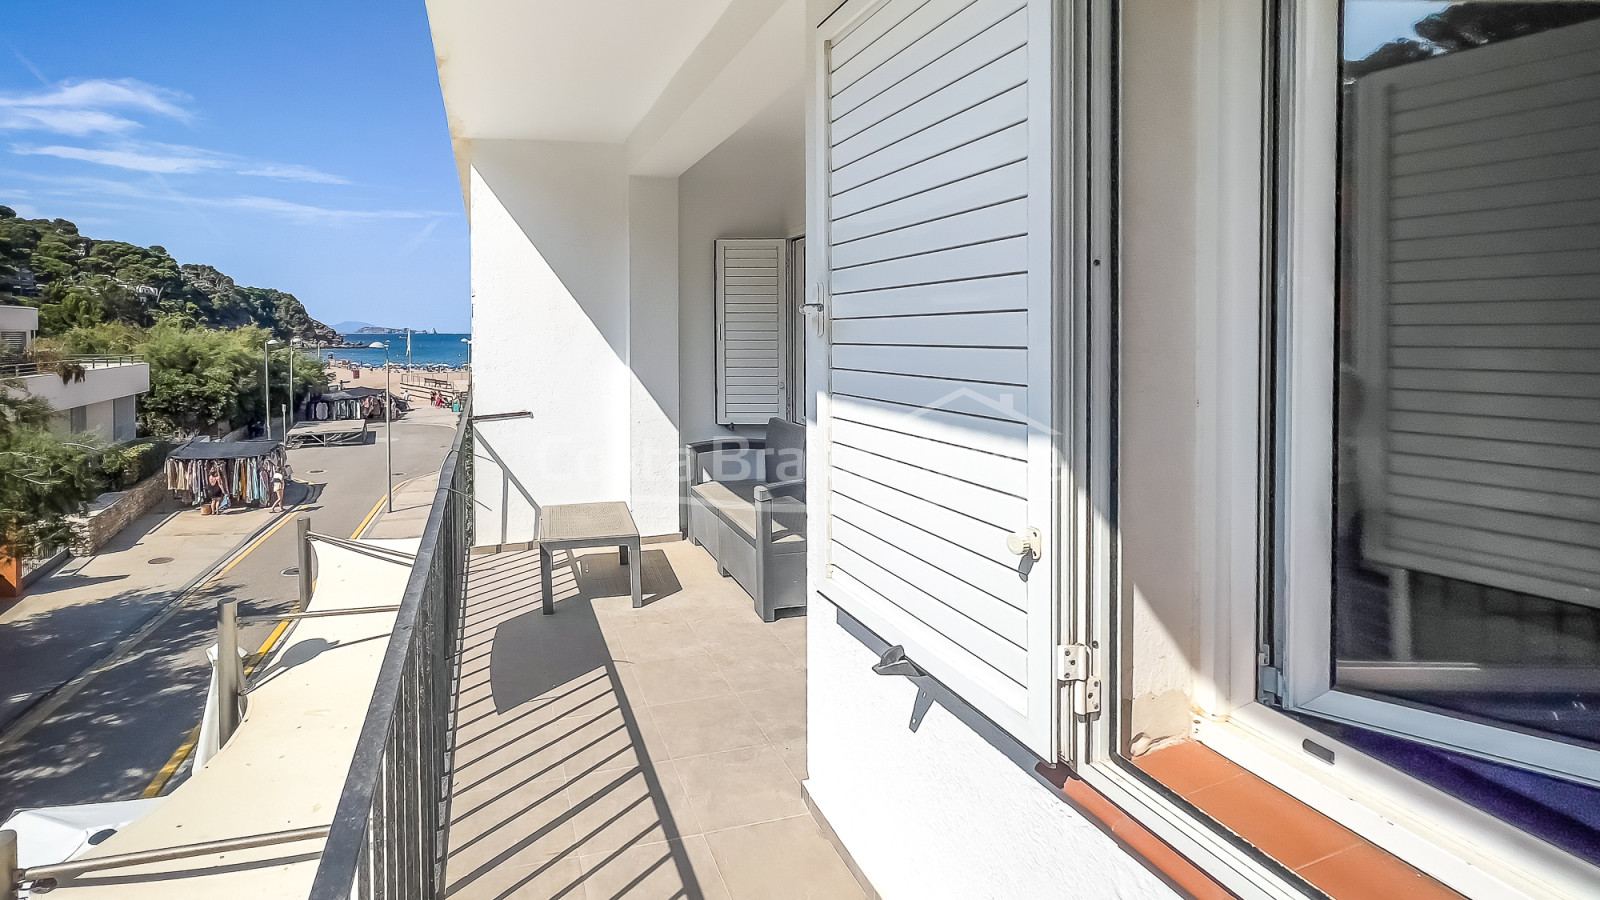 Apartament renovat a la platja de Sa Riera, Begur, en venda